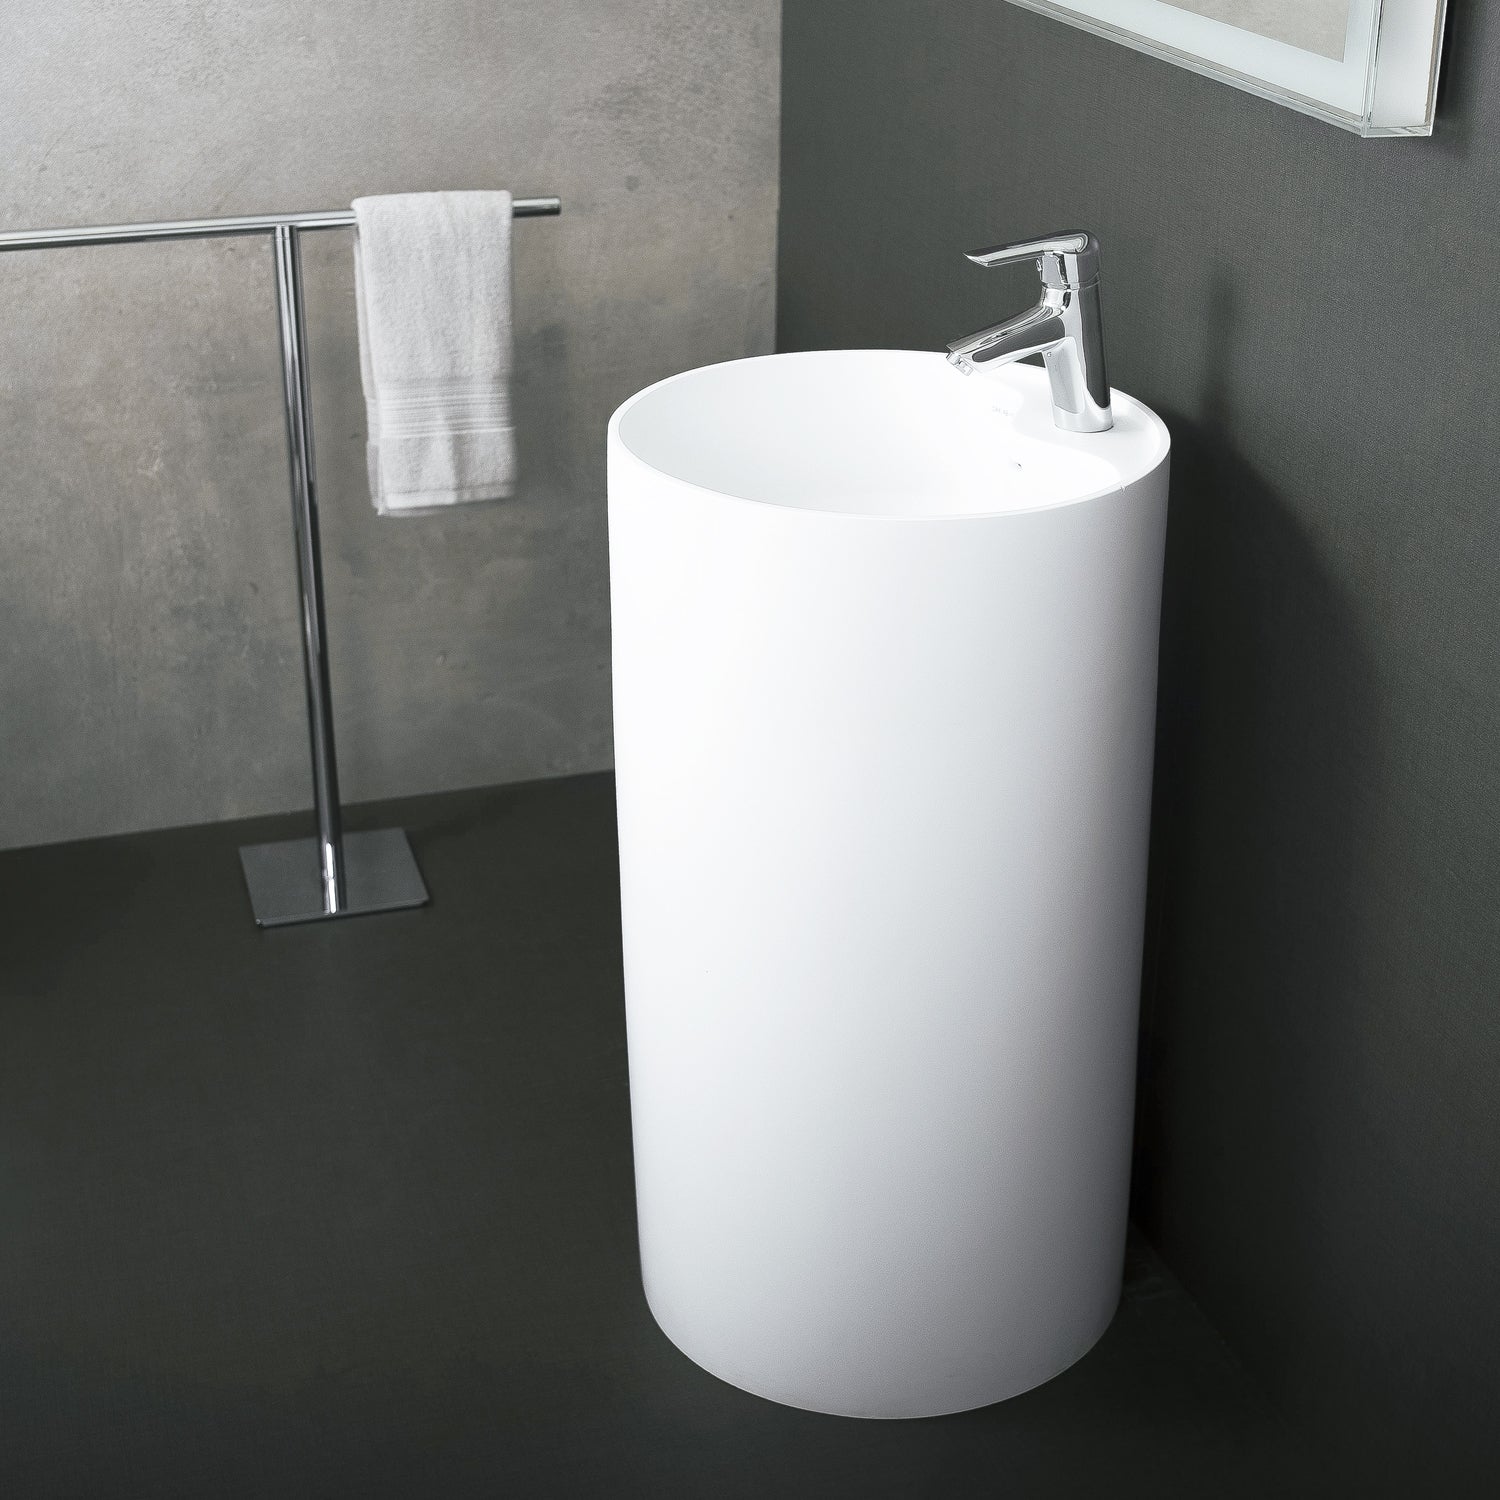 DAX Solid Surface Round Pedestal Freestanding Bathroom Sink, White Matte Finish, 17-1/2 x 17-1/2 x 31-1/2 Inches (DAX-AB-1380)